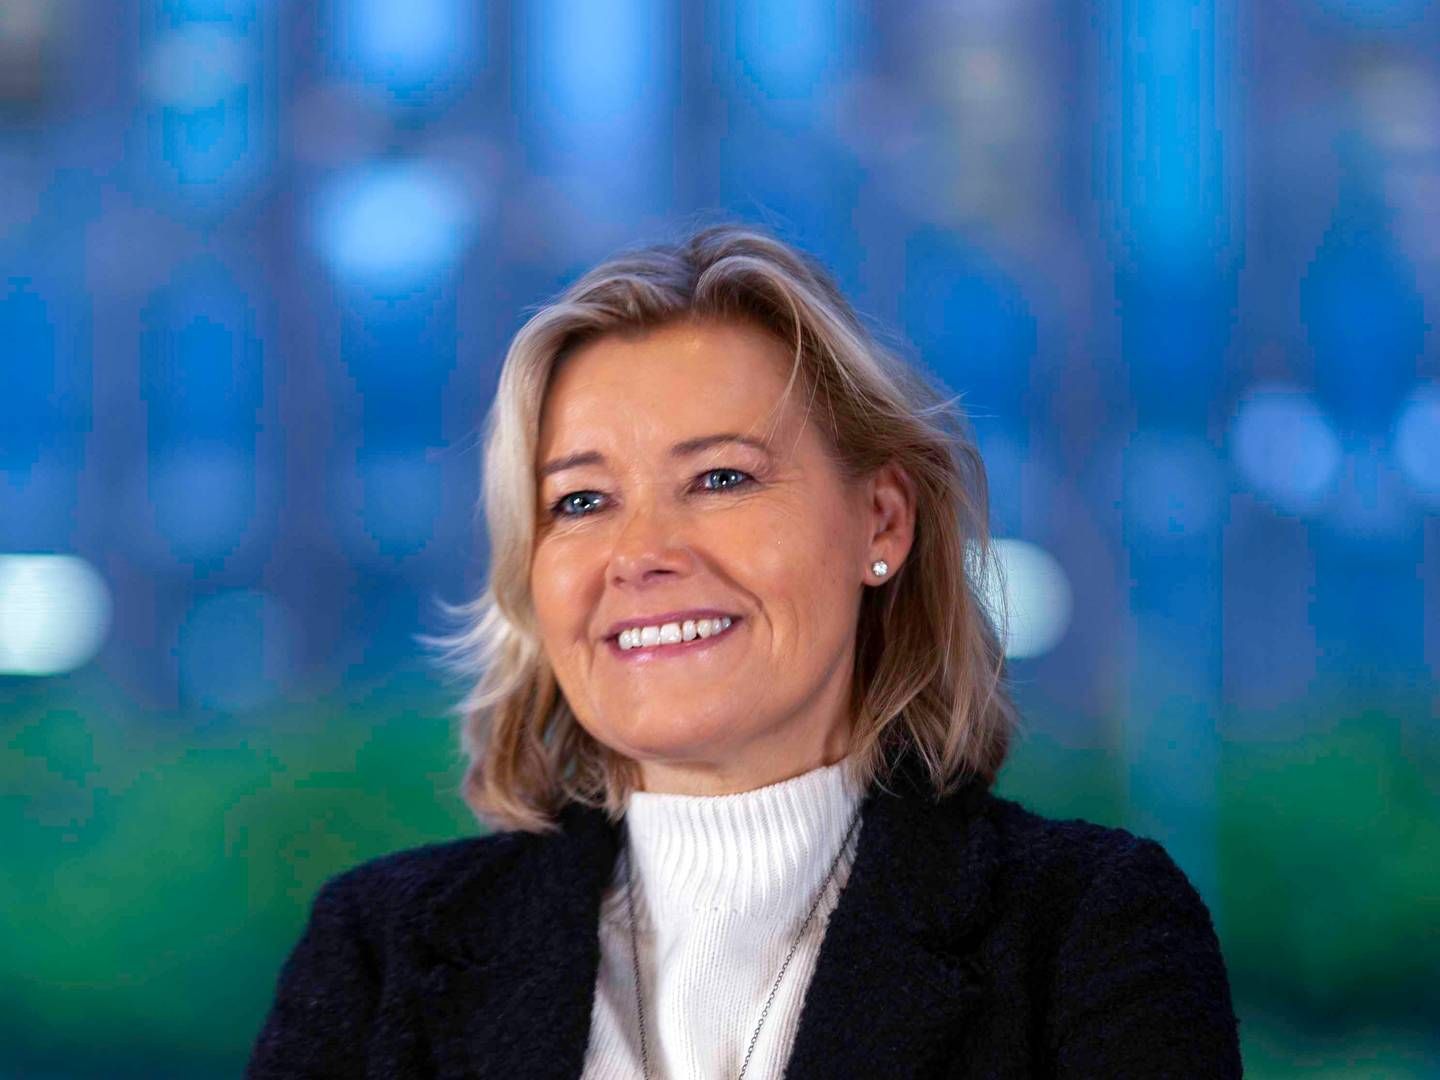 Direktionsmedlem i Danske Bank, Berit Behring, forlader til sommer banken. Til den tid vil Johanna Norberg være eneste kvindelige medlem af direktionen. | Foto: Pr / Danske Bank